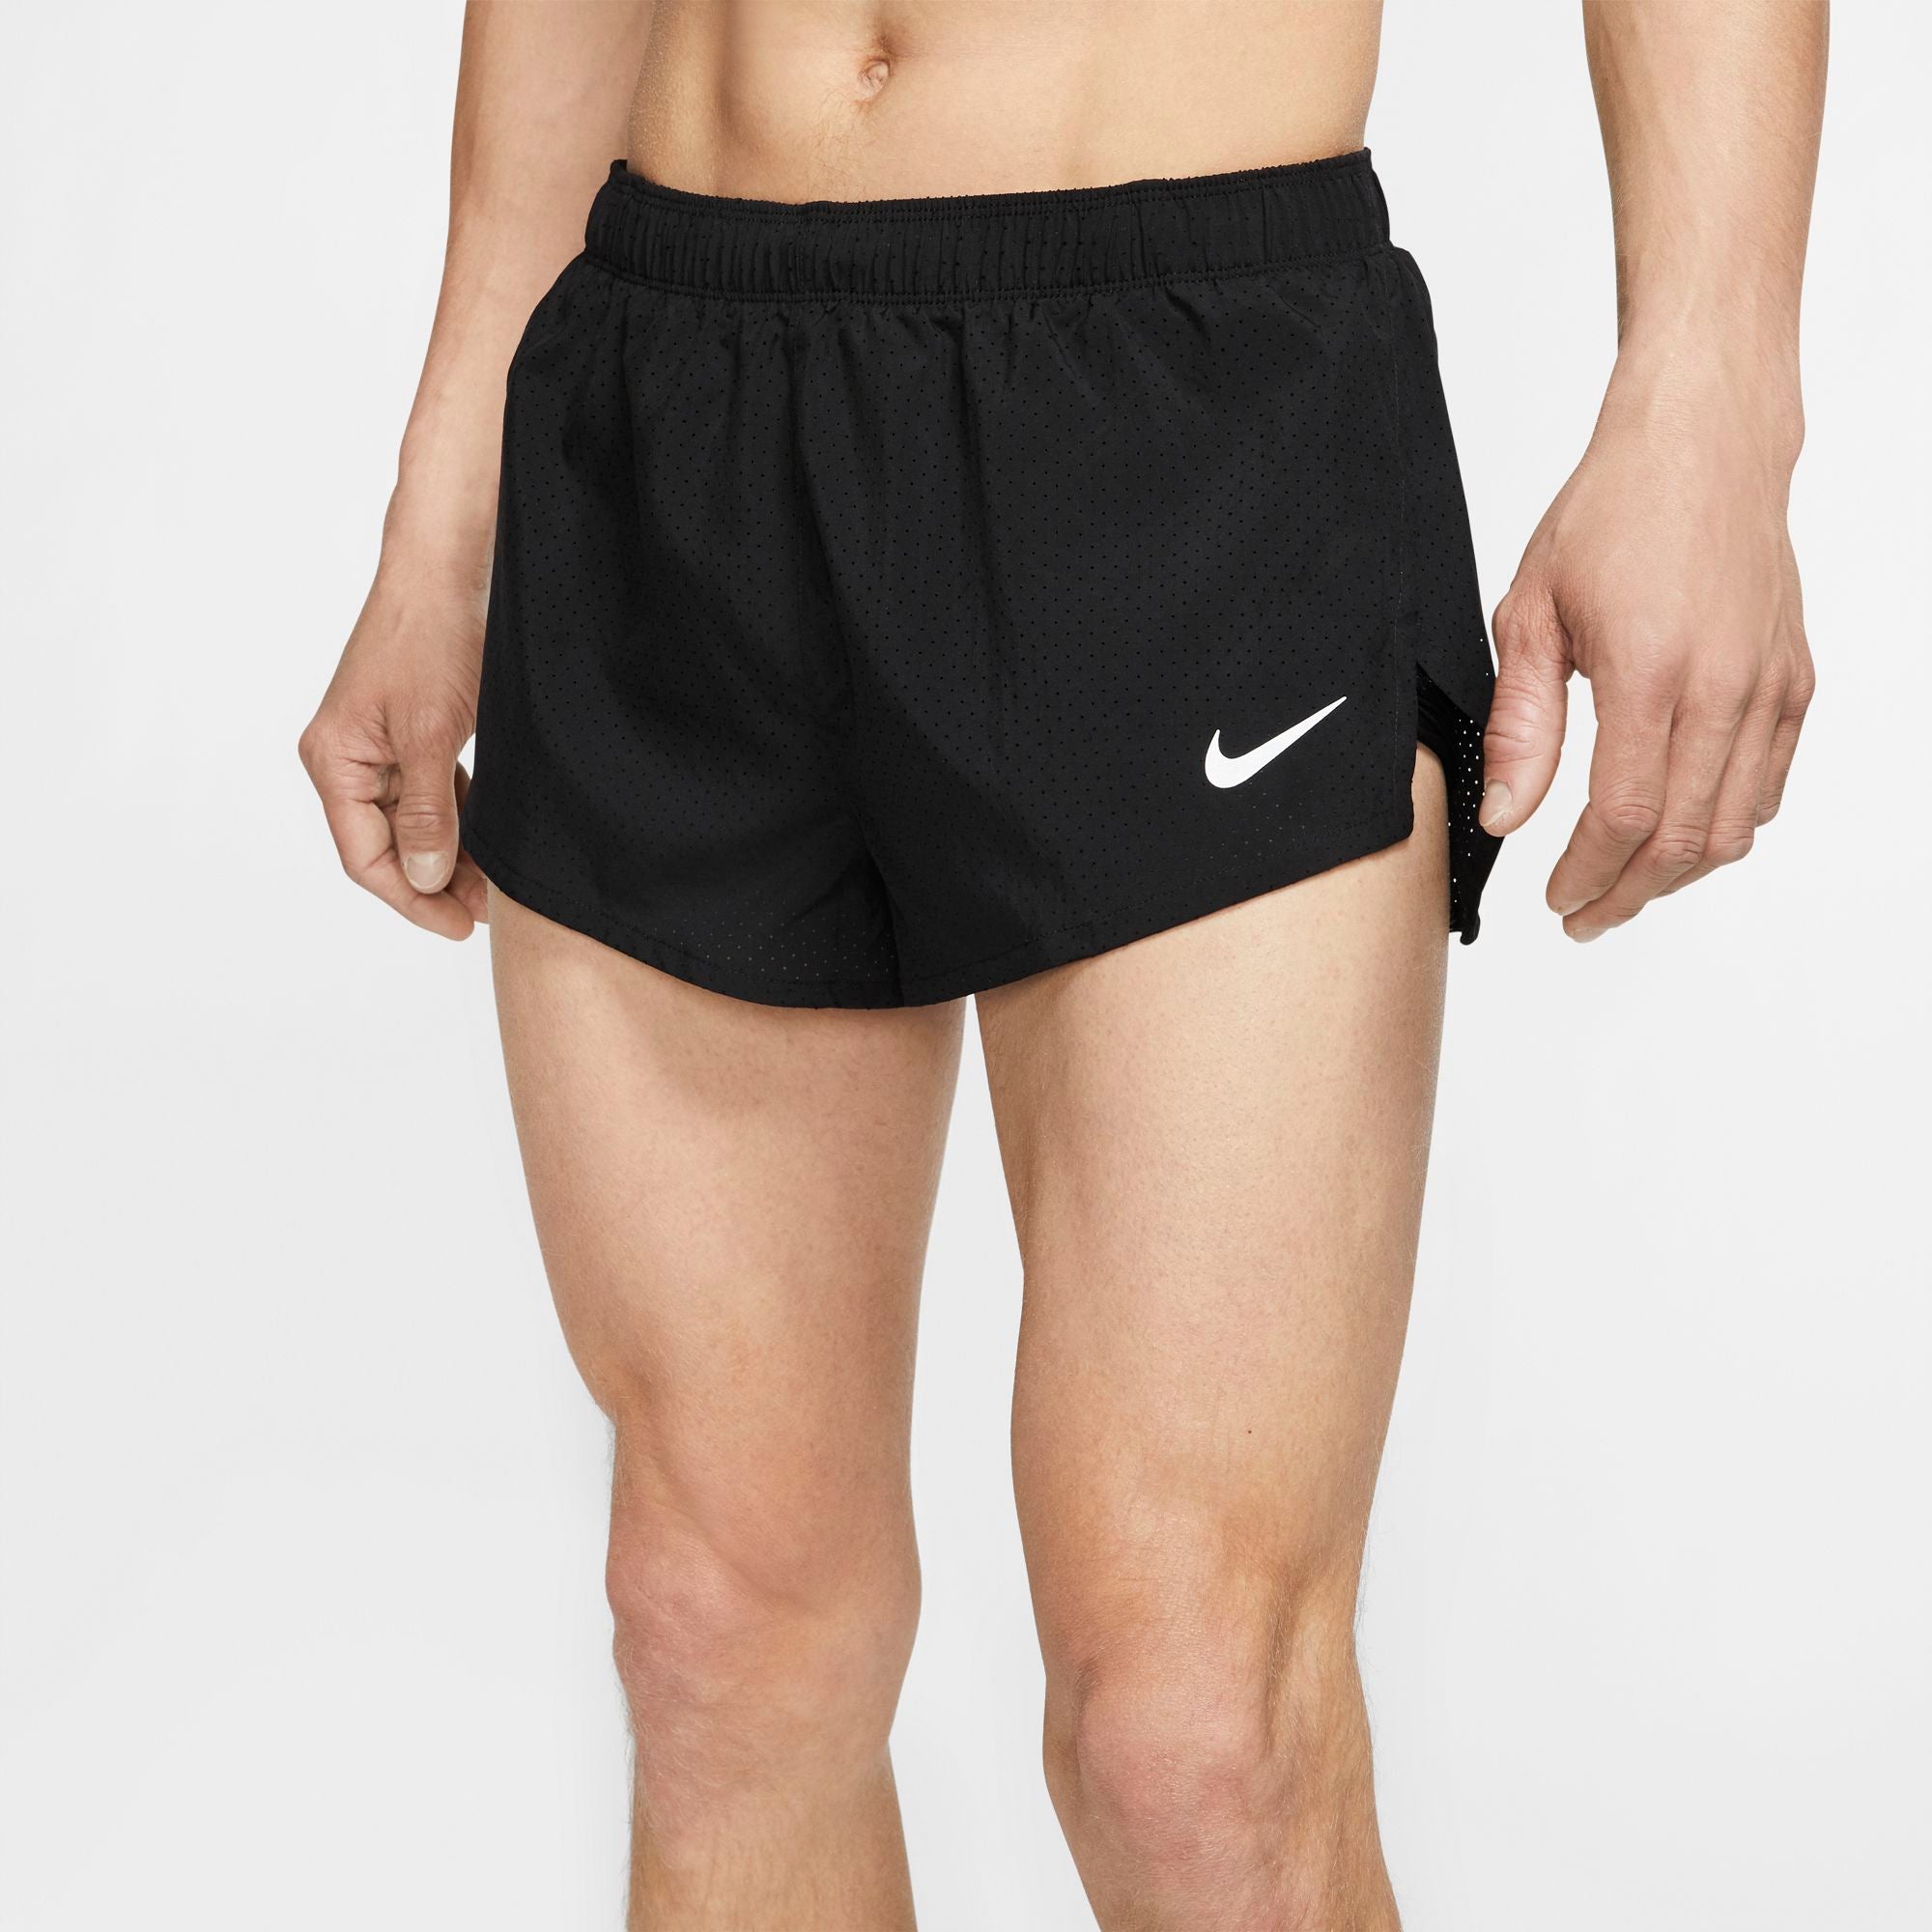 nike running shorts 2 inch